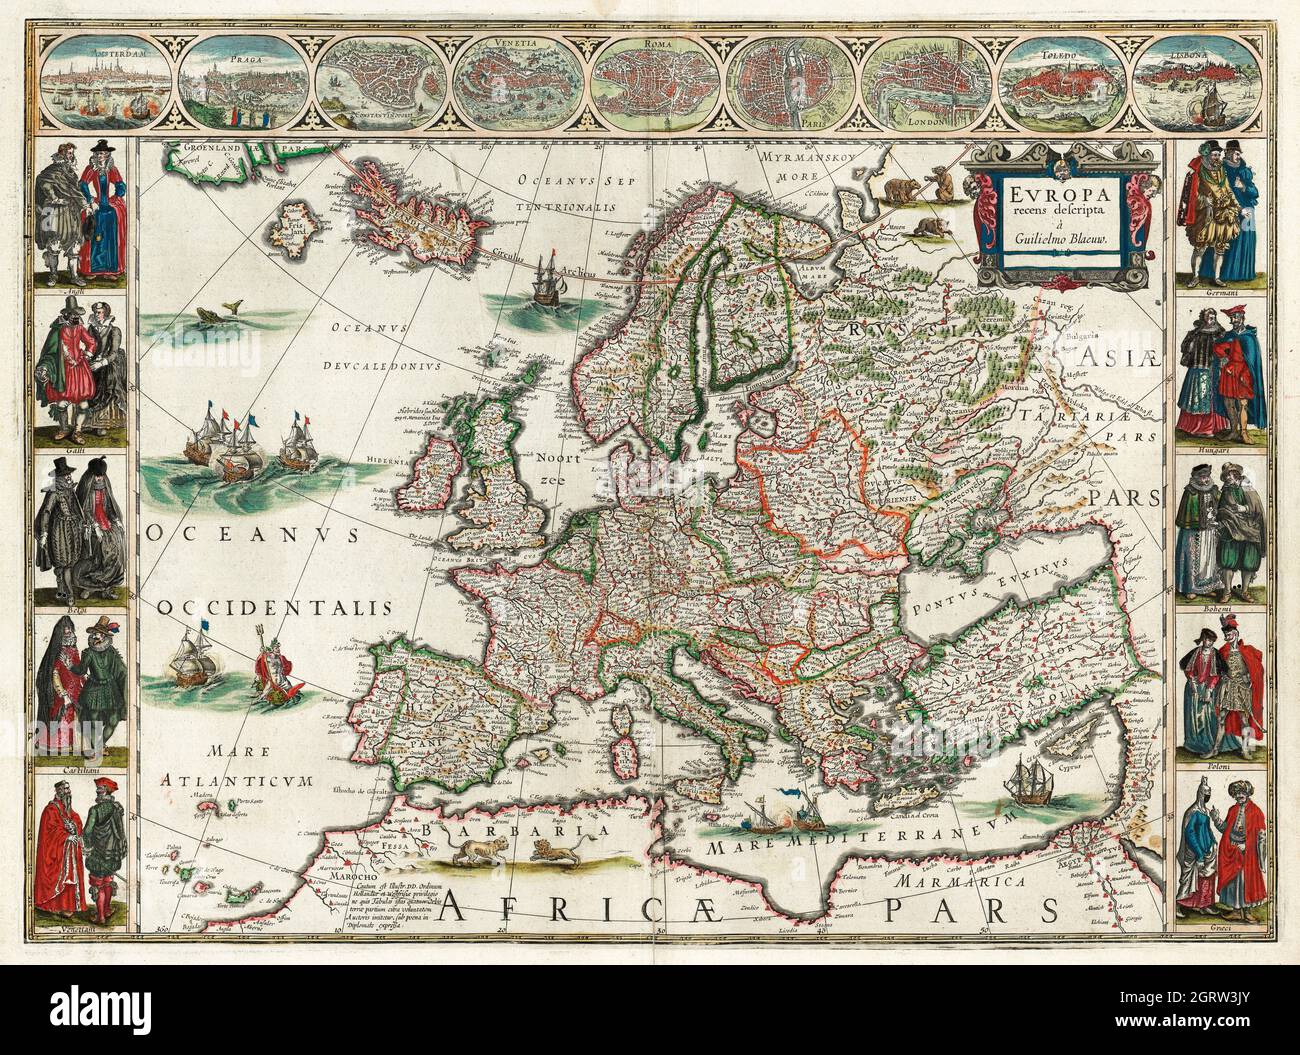 Europa recens descripta – Map of Europe. 1635. Stock Photo